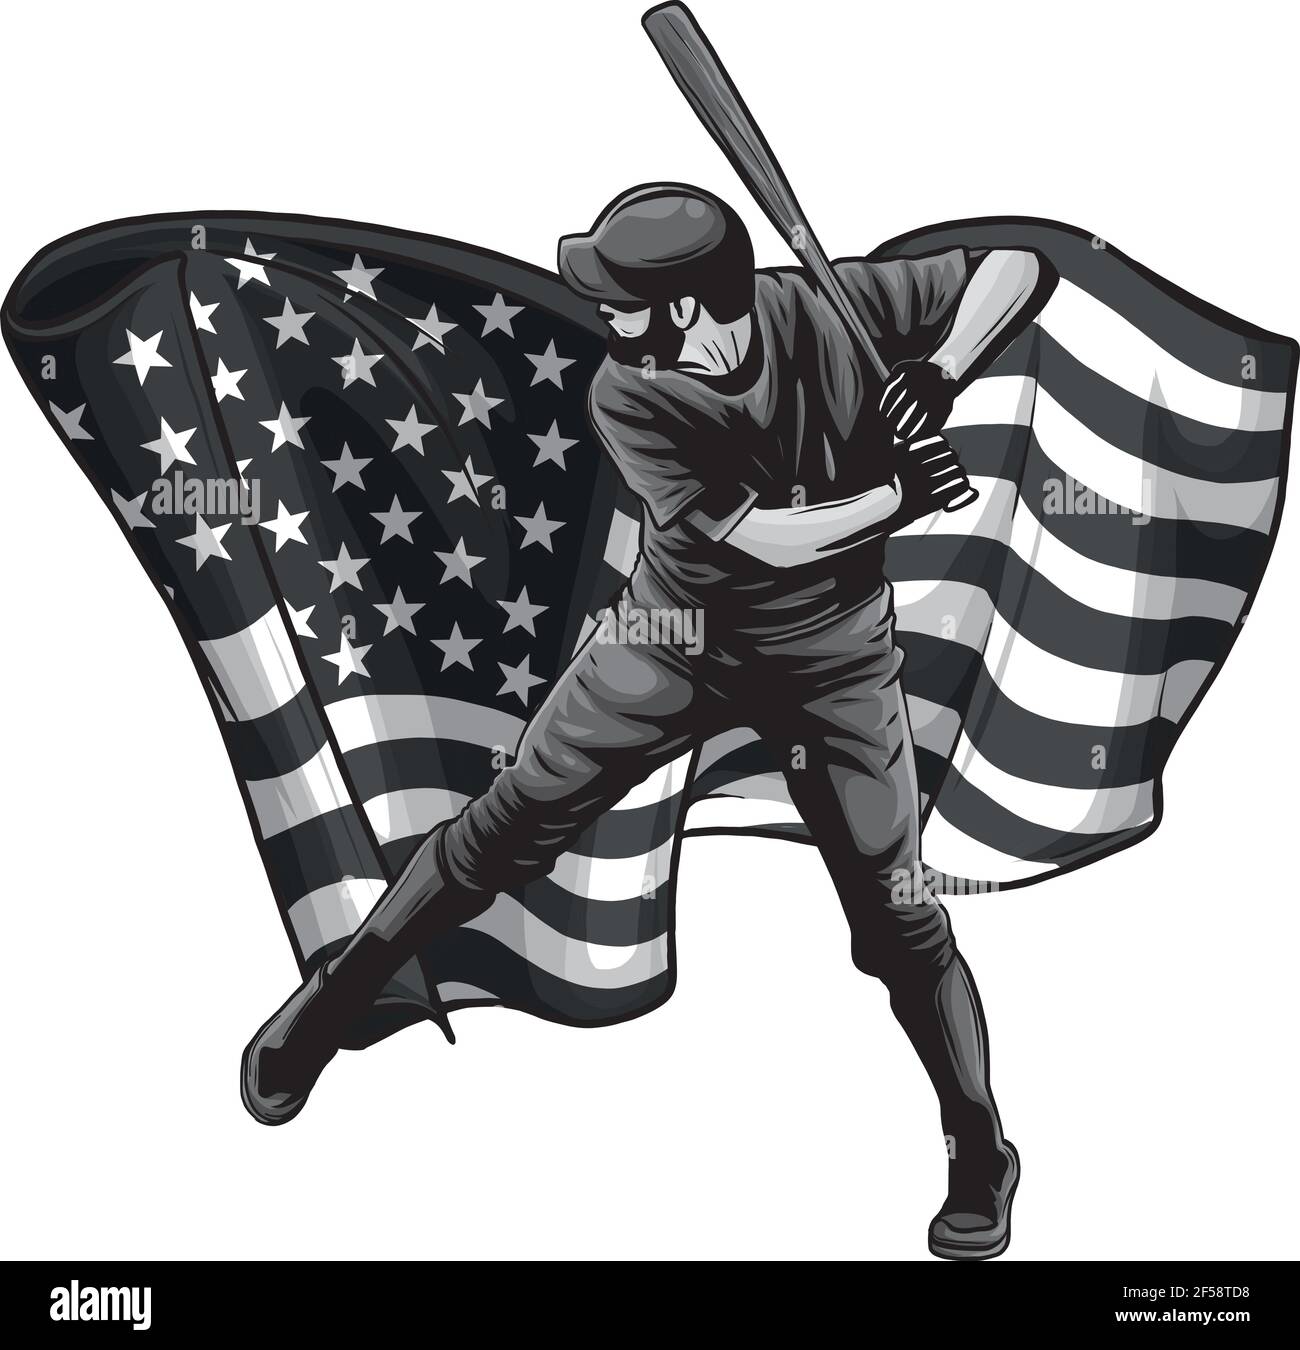 Dessin d'un joueur de baseball avec illustration du vecteur drapeau américain Illustration de Vecteur